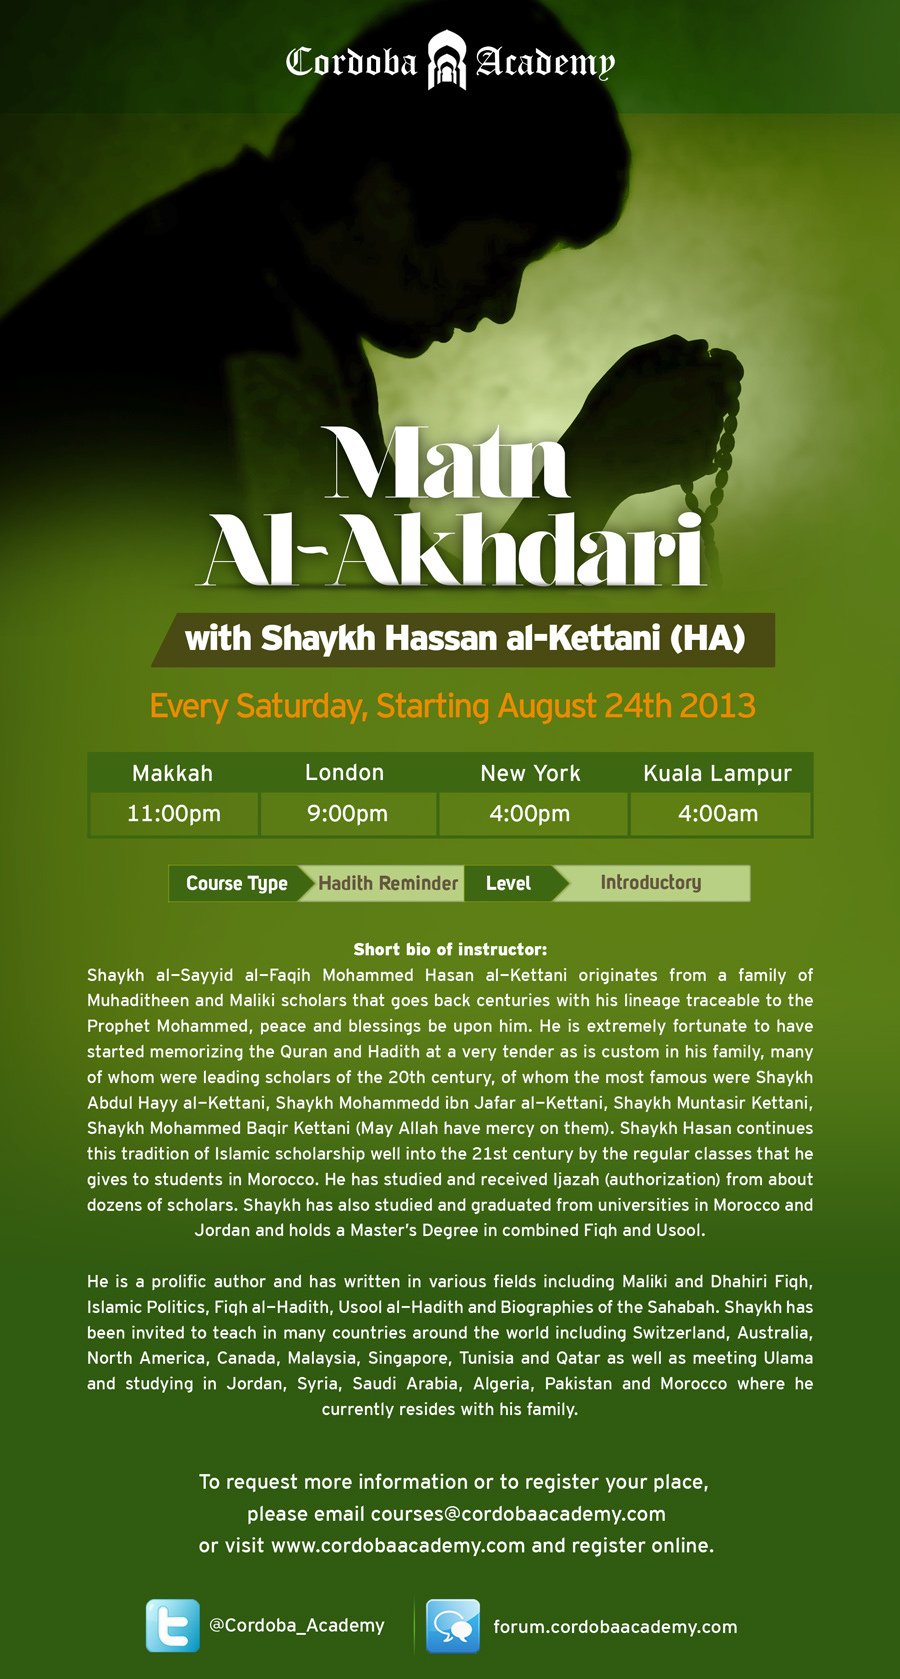 Matn Al Akhdari Flyer 1 - Cordoba Academy Fall Course:Matan Al-Akhdari